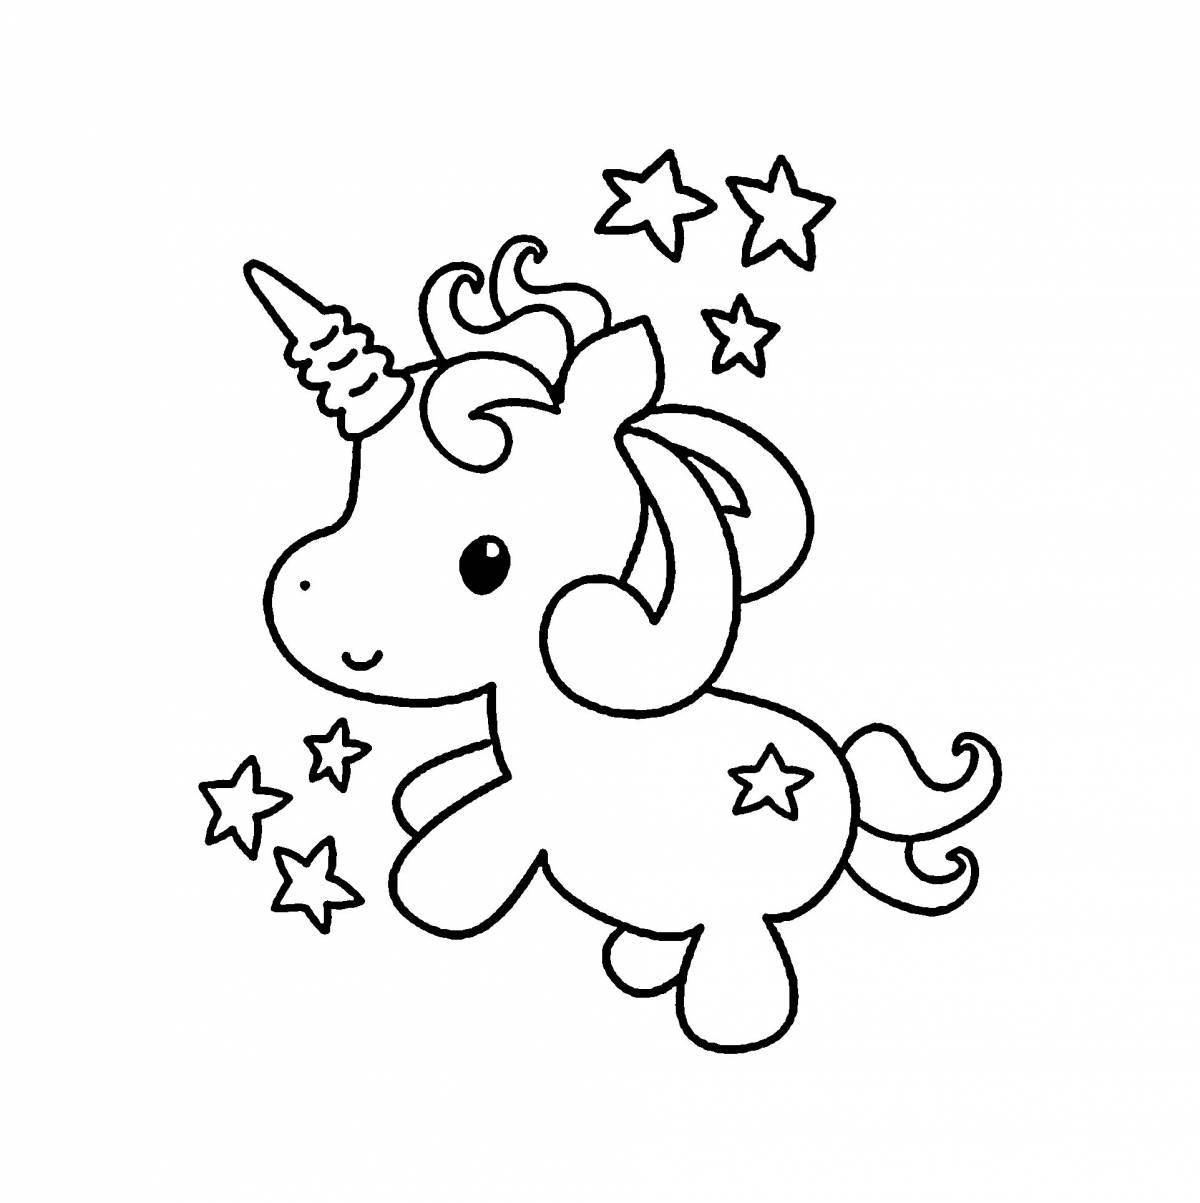 Unicorn glitter coloring book for kids